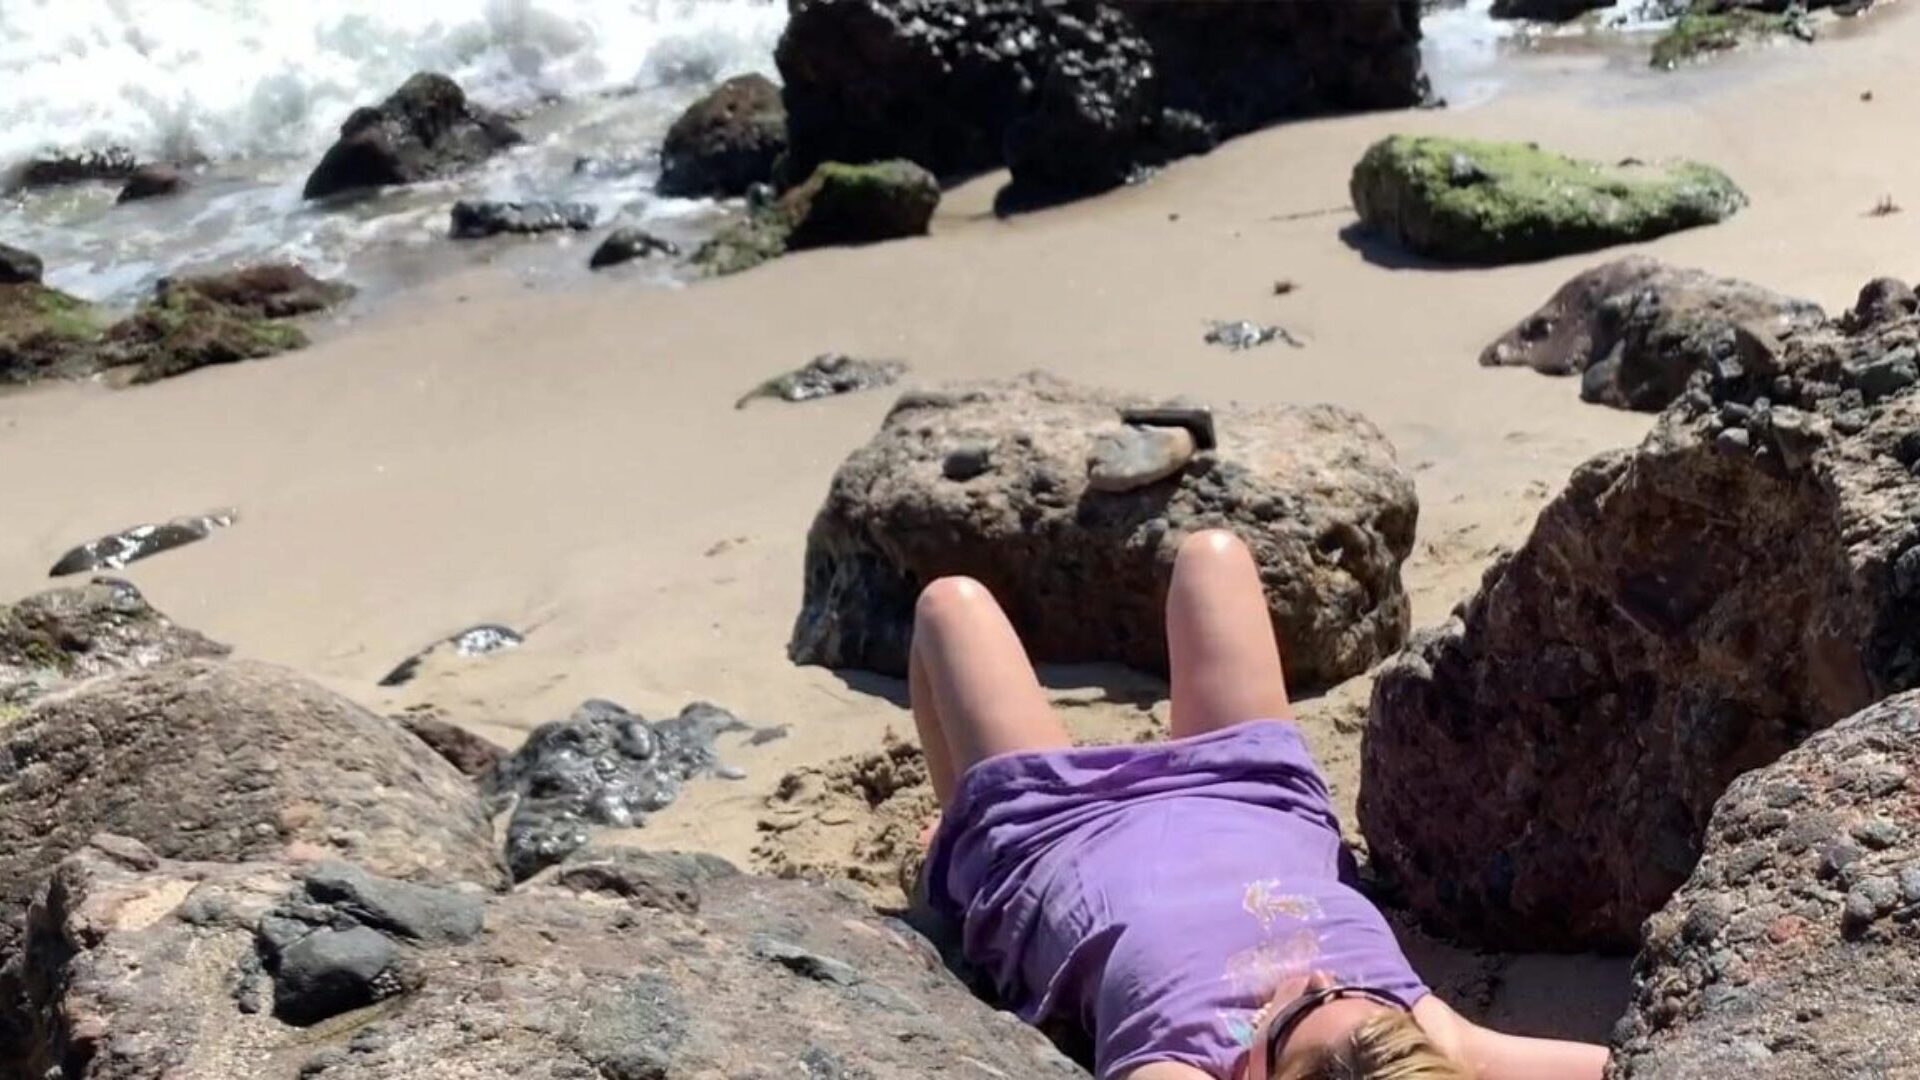 ογκώδης ξανθιά ηλιοθεραπεία γυμνή στην παραλία συγκλίνει περαστικός σέξι ξανθιά άντρας άντλησης στην παραλία που πιάστηκε στη φωτογραφική μηχανή